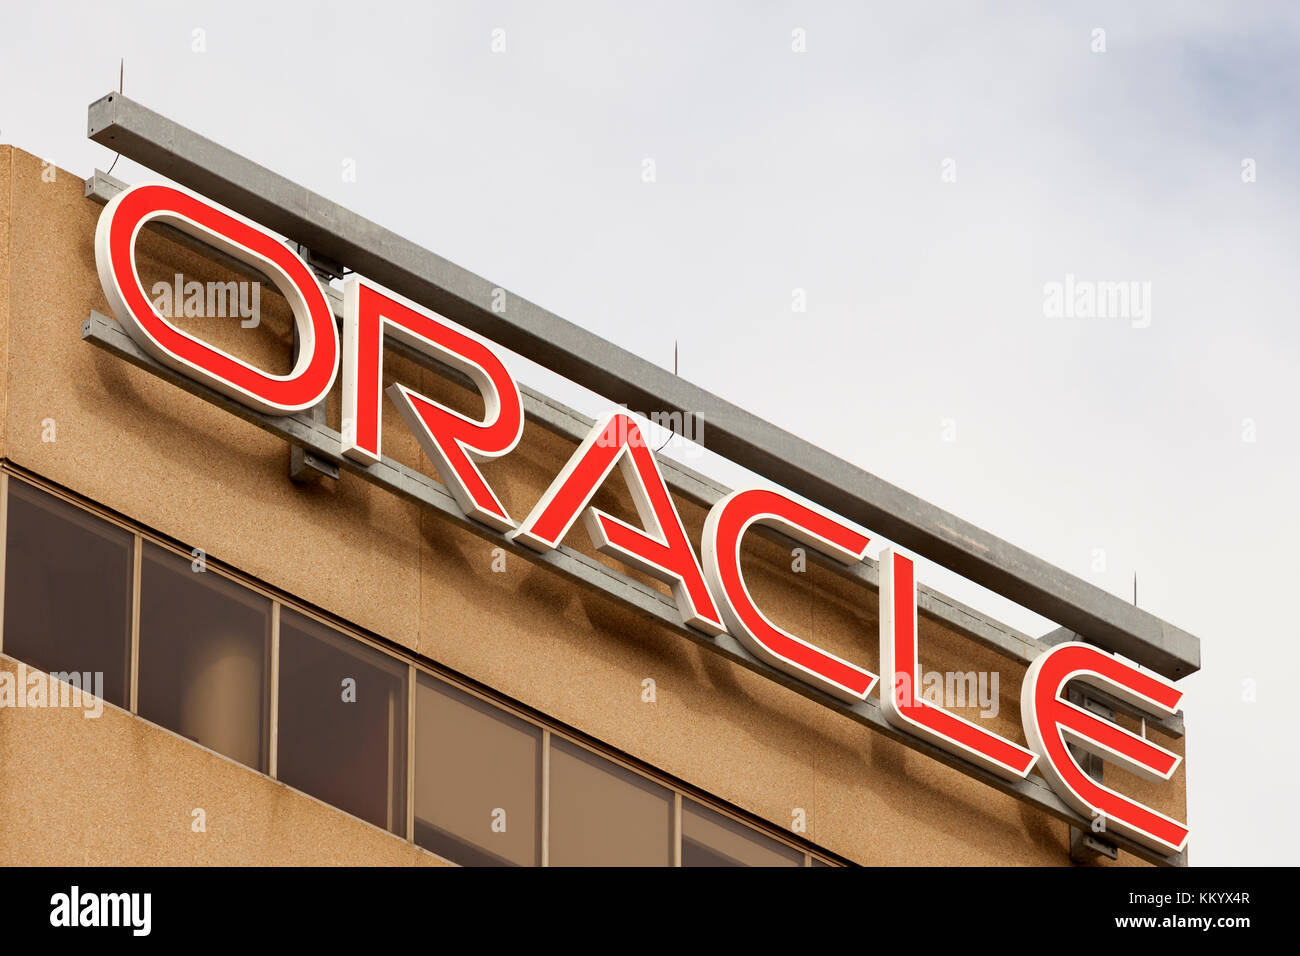 Toronto, Canada - oct 21, 2017: la oficina de la empresa Oracle en la ciudad de Toronto, Canadá Foto de stock